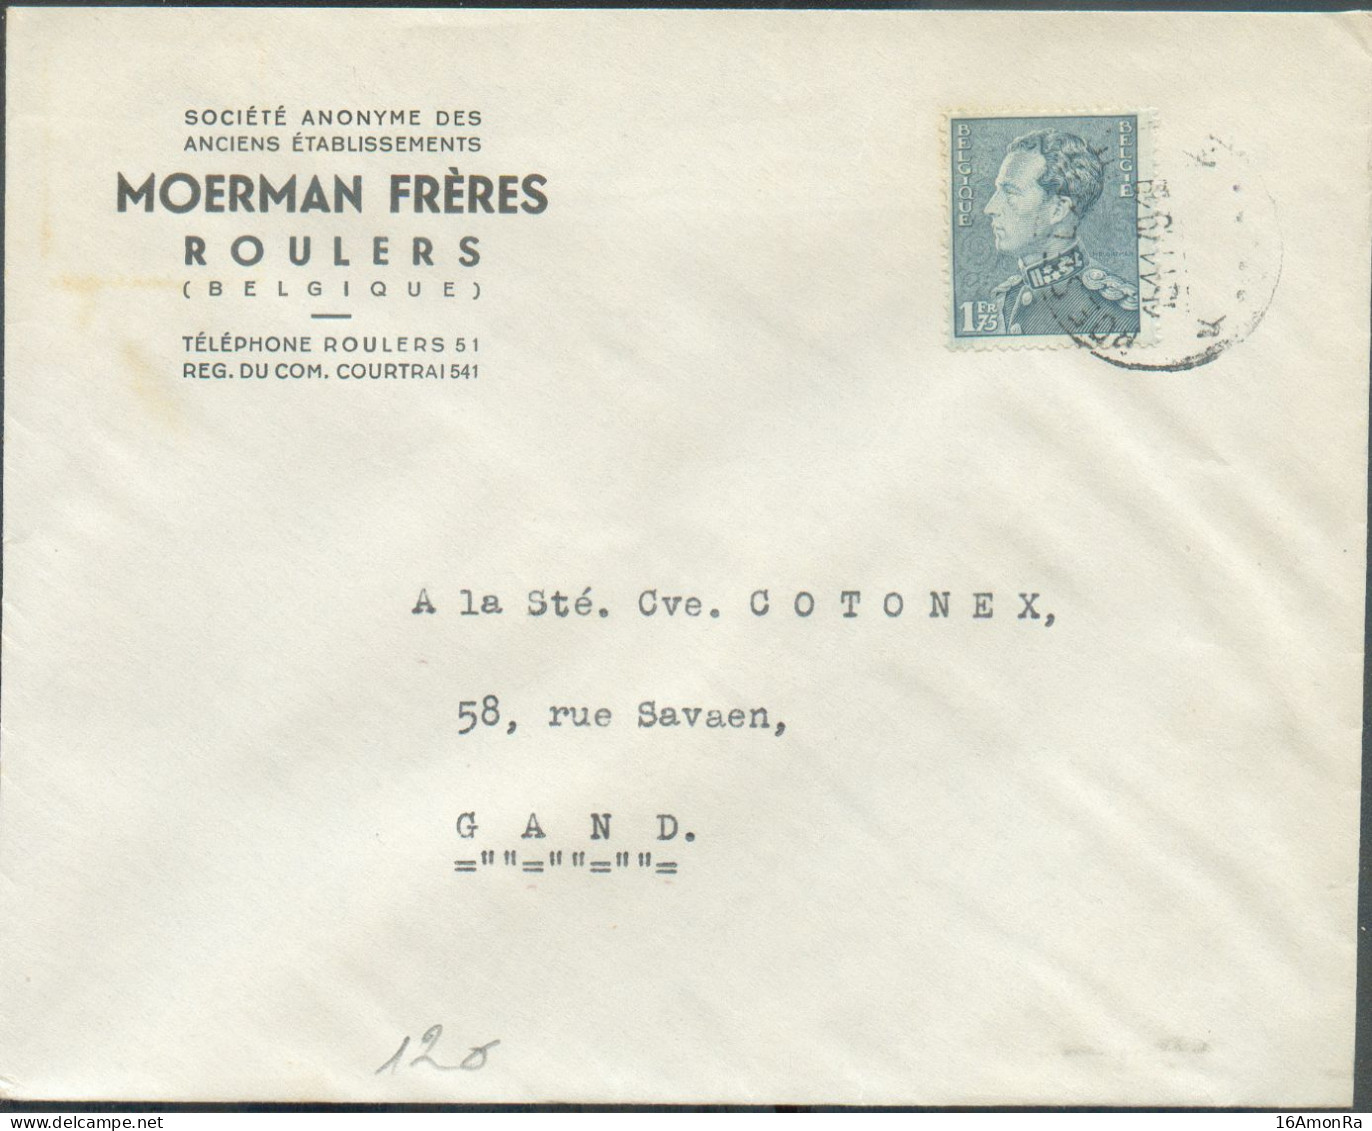 N°430 - 1Fr75 POORTMAN Obl. Sc ROESELARE (ROULERS) Sur Lettre à En-tête (MOERMAN Frères) 15-11-1949 Vers Gand - 21852 - 1936-1951 Poortman